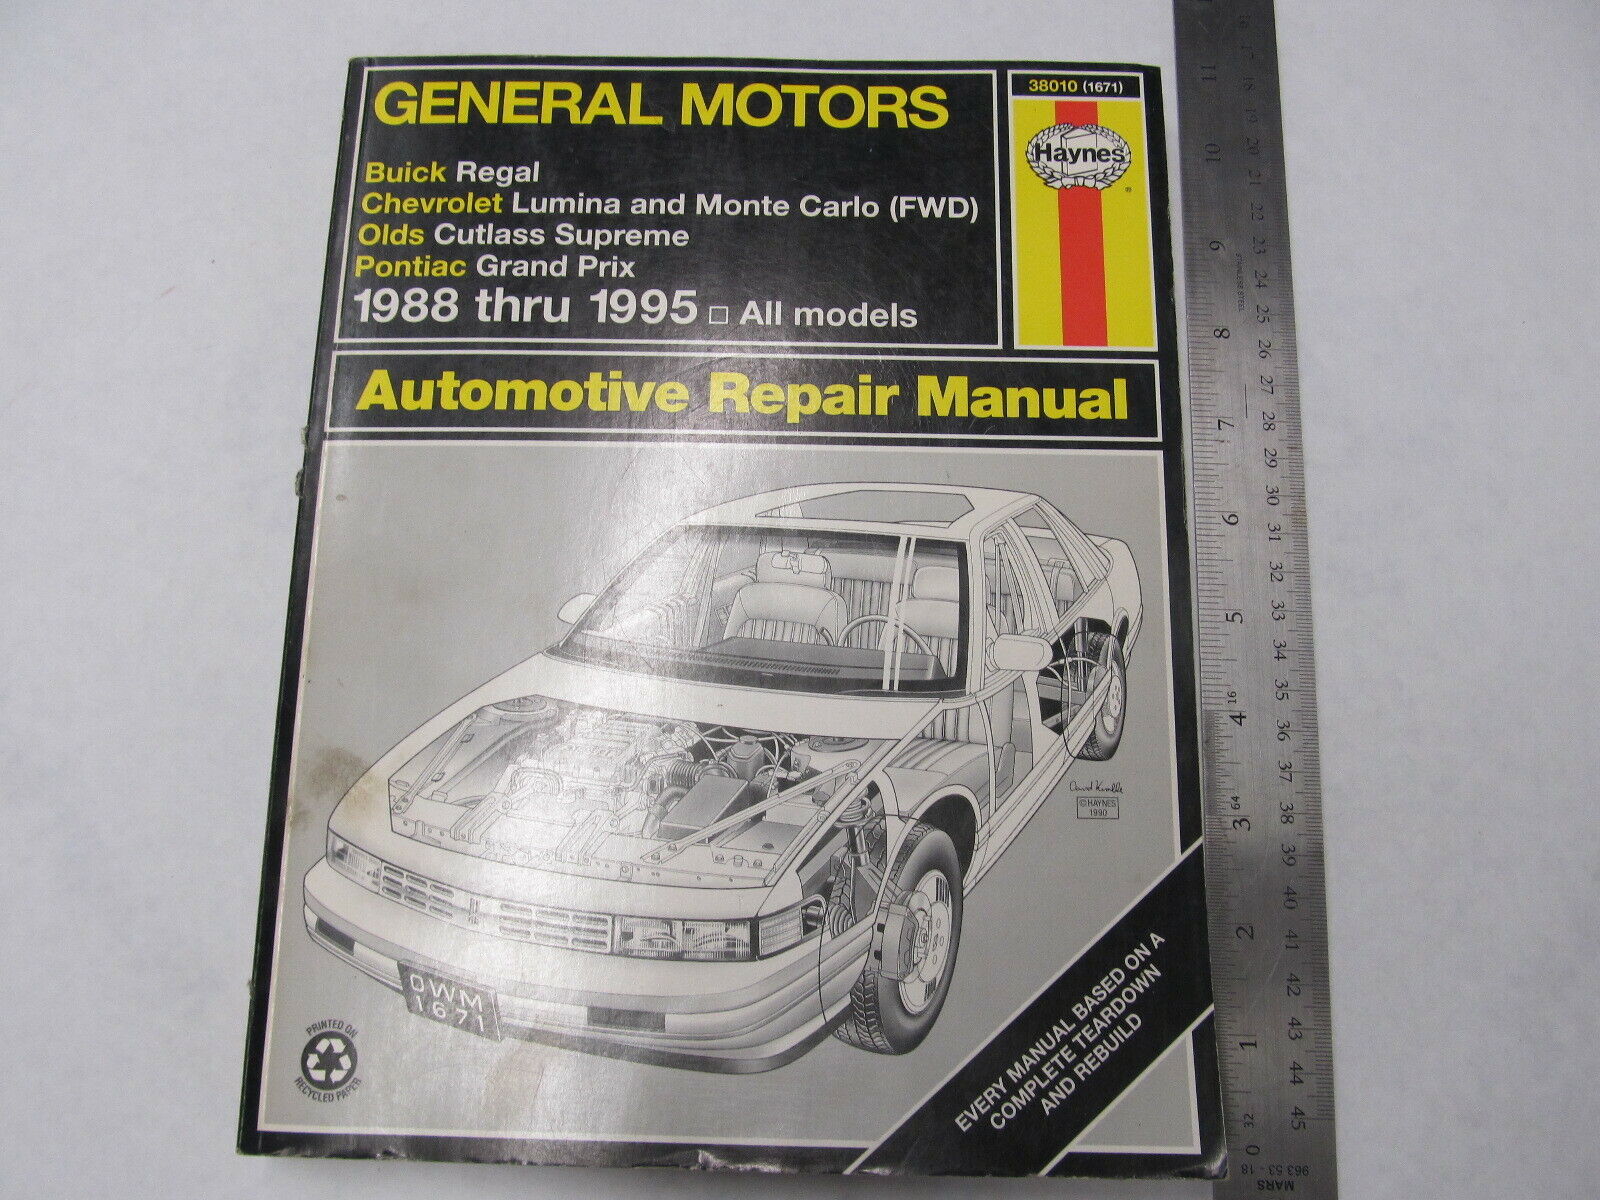 1988-1995 Haynes GM Automotive Repair Manual 38010 (1671)